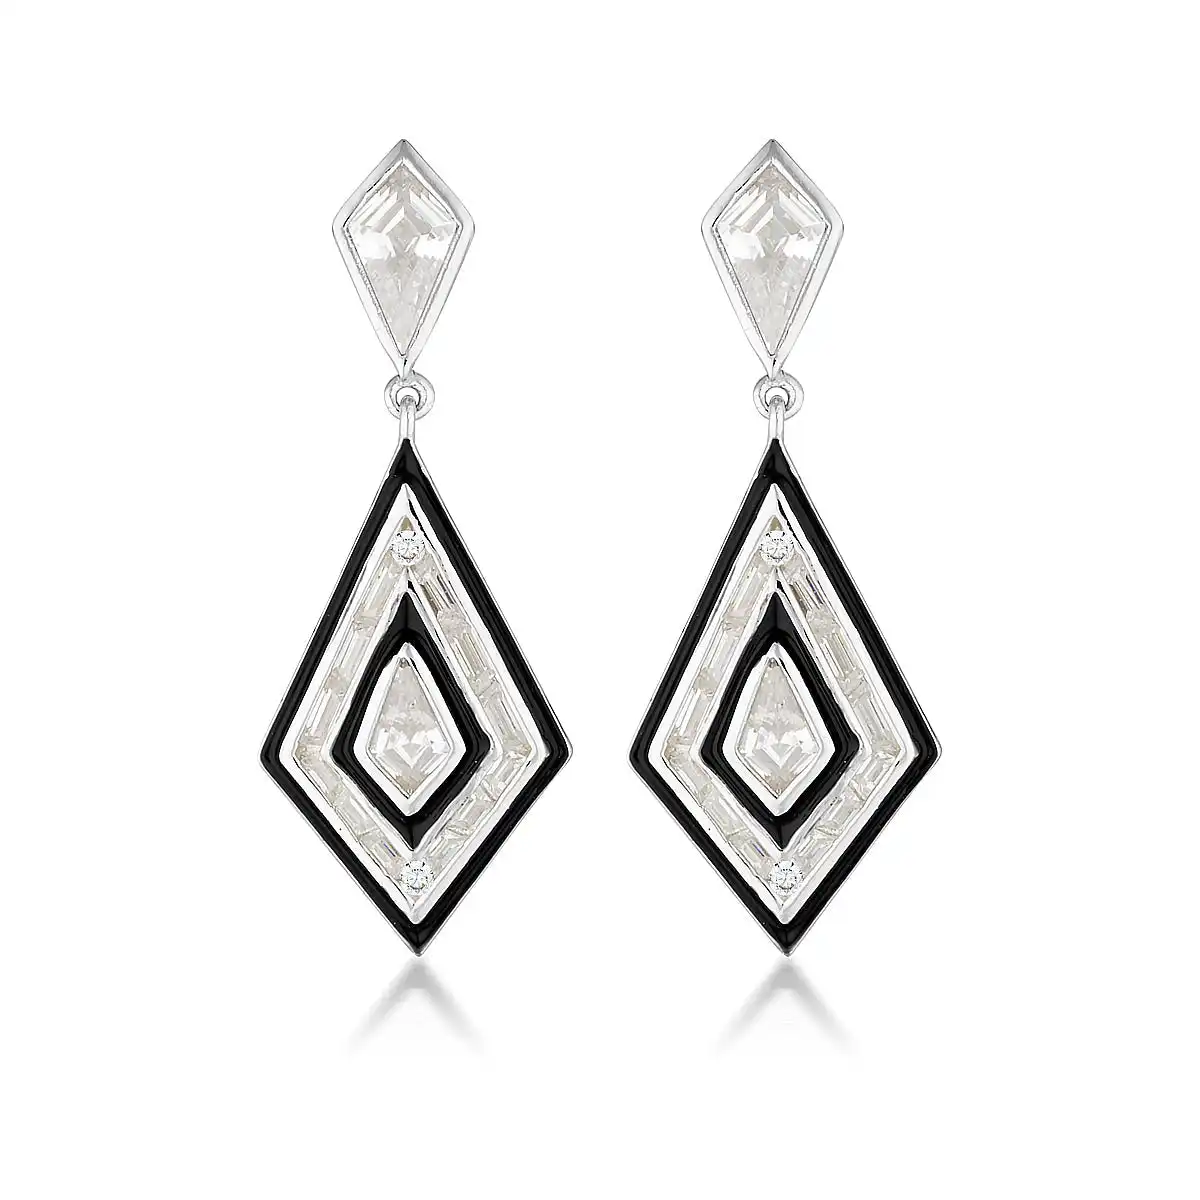 Georgini Reflection Art Deco Earrings Silver & Black Enamel